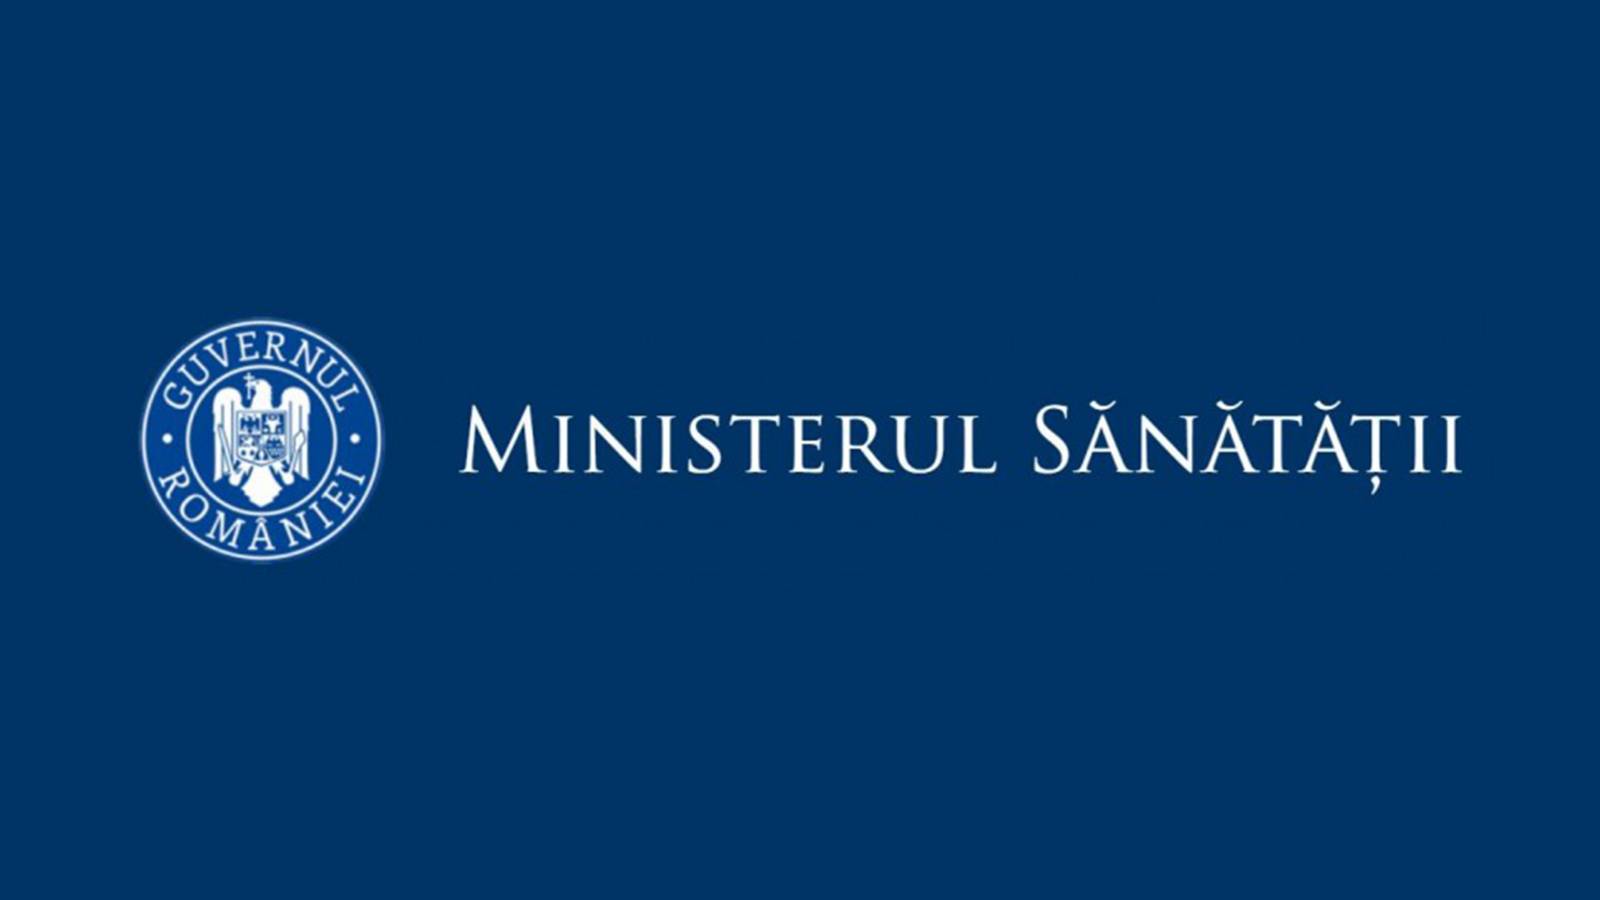 Ministerul Sanatatii Ratele de Incidenta pentru Judetele din Romania pe 4 Martie